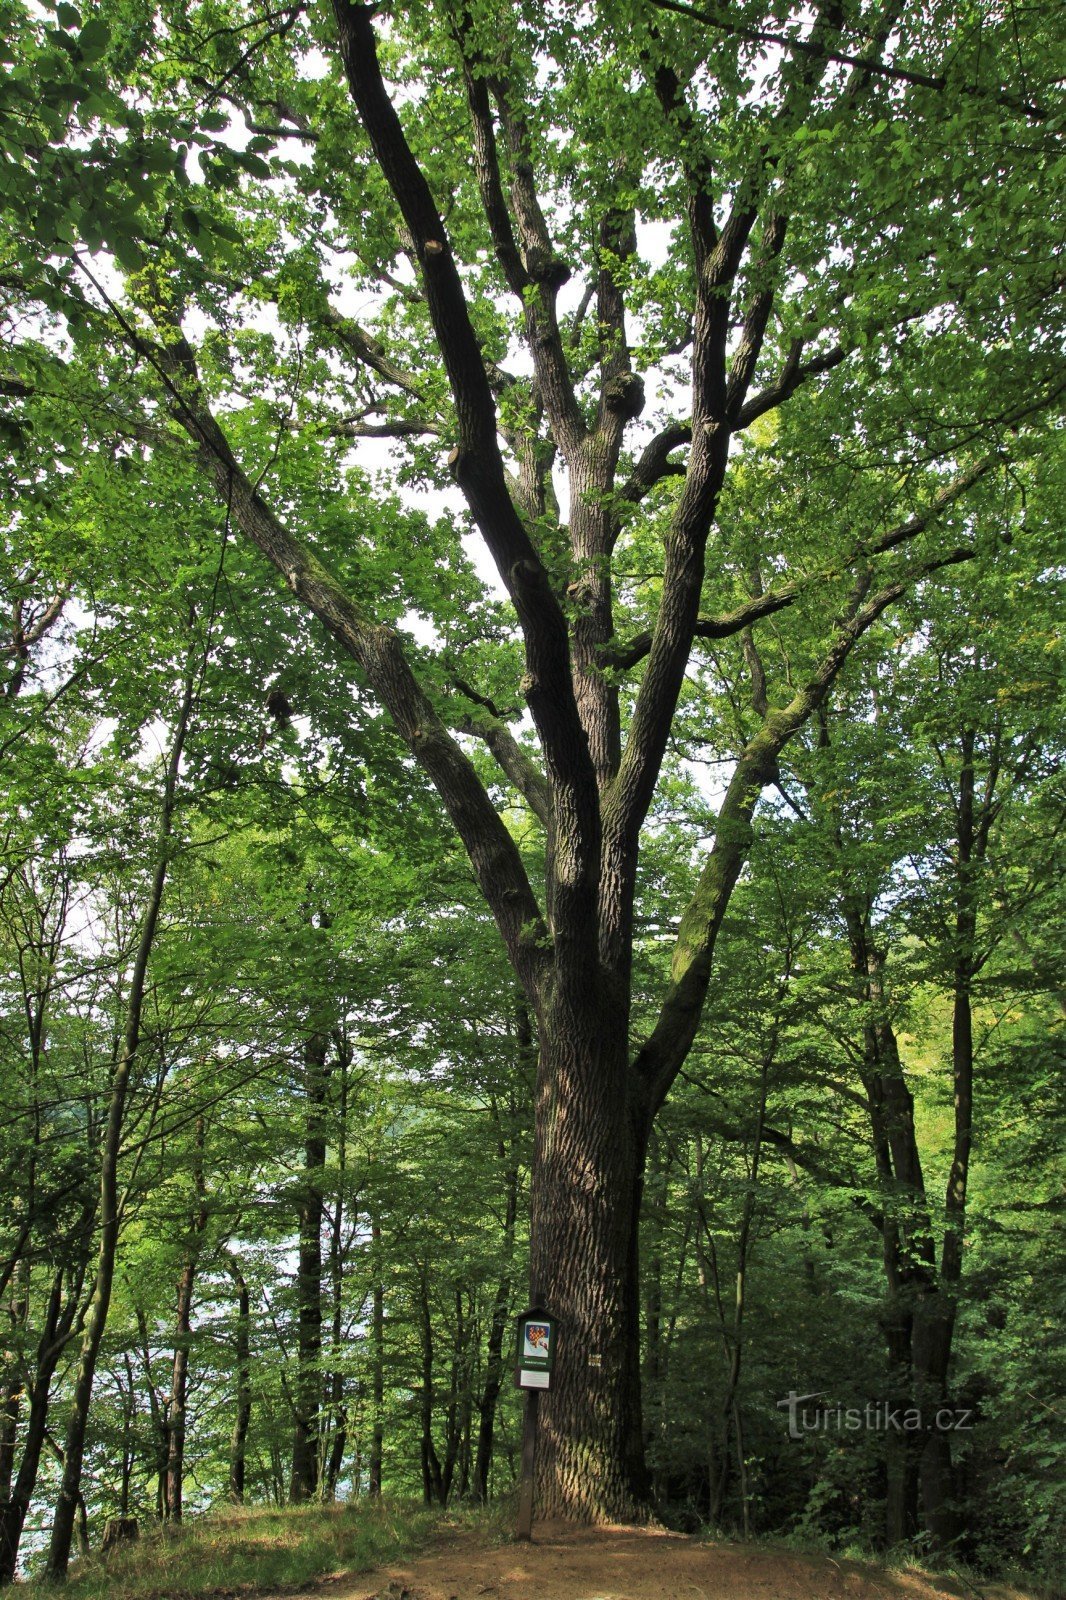 Chêne près de Junácká louka